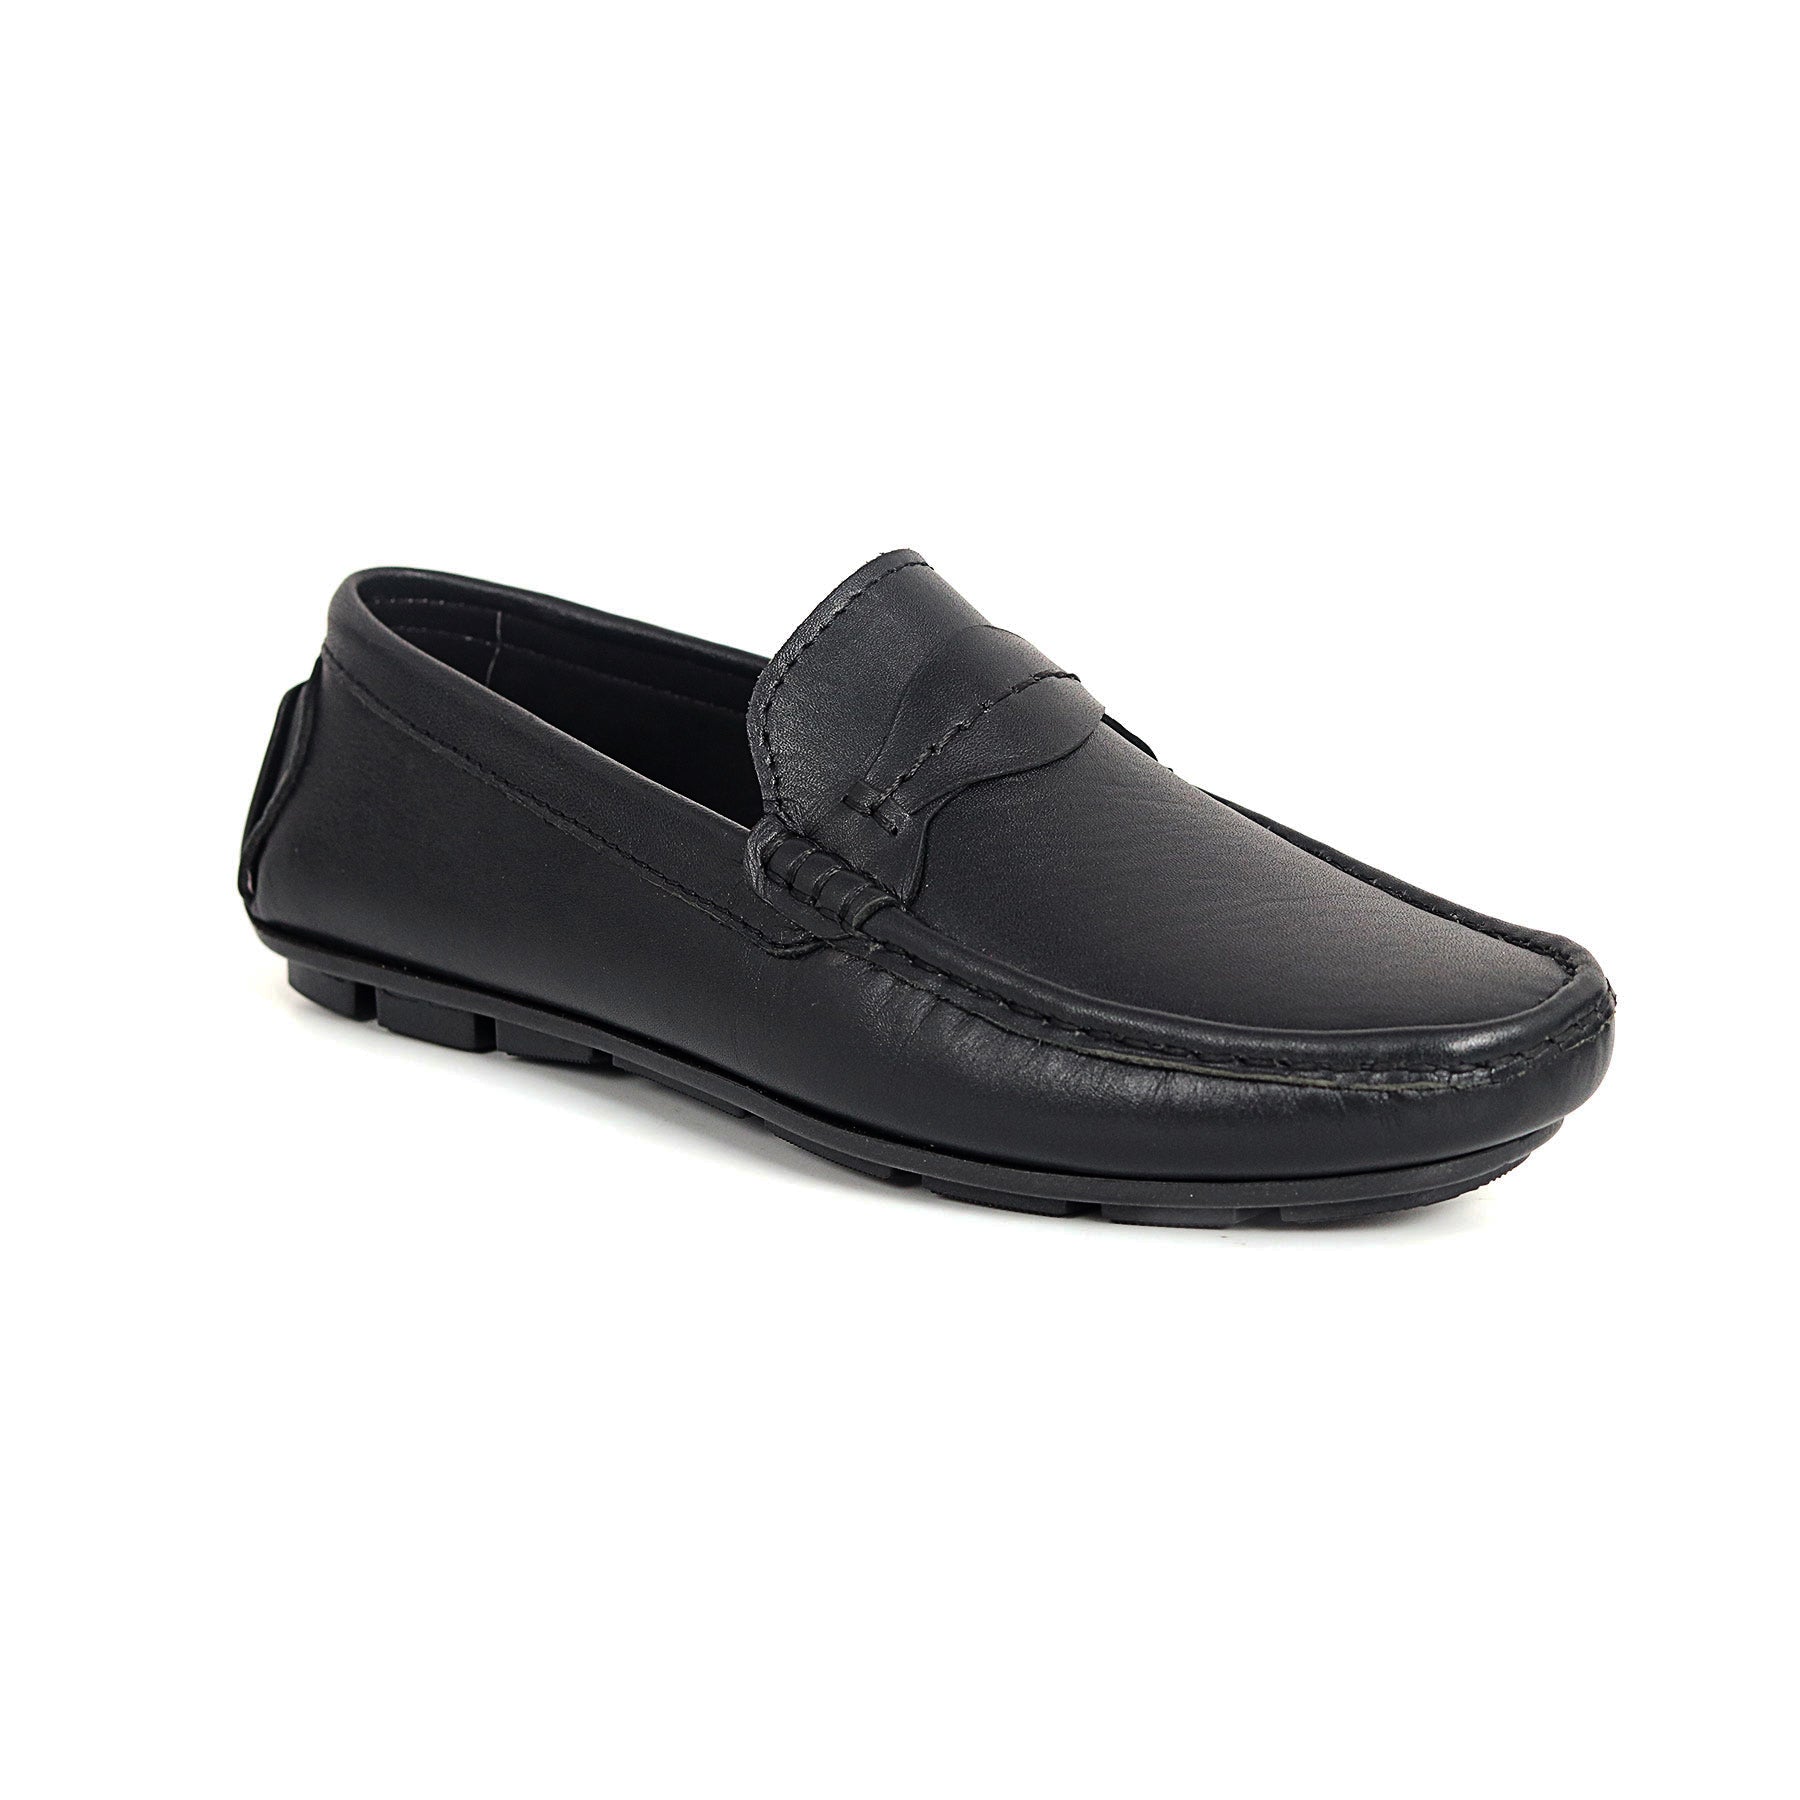 Zays Leather Loafer Shoe For Men (Black) - ZAYSSF35